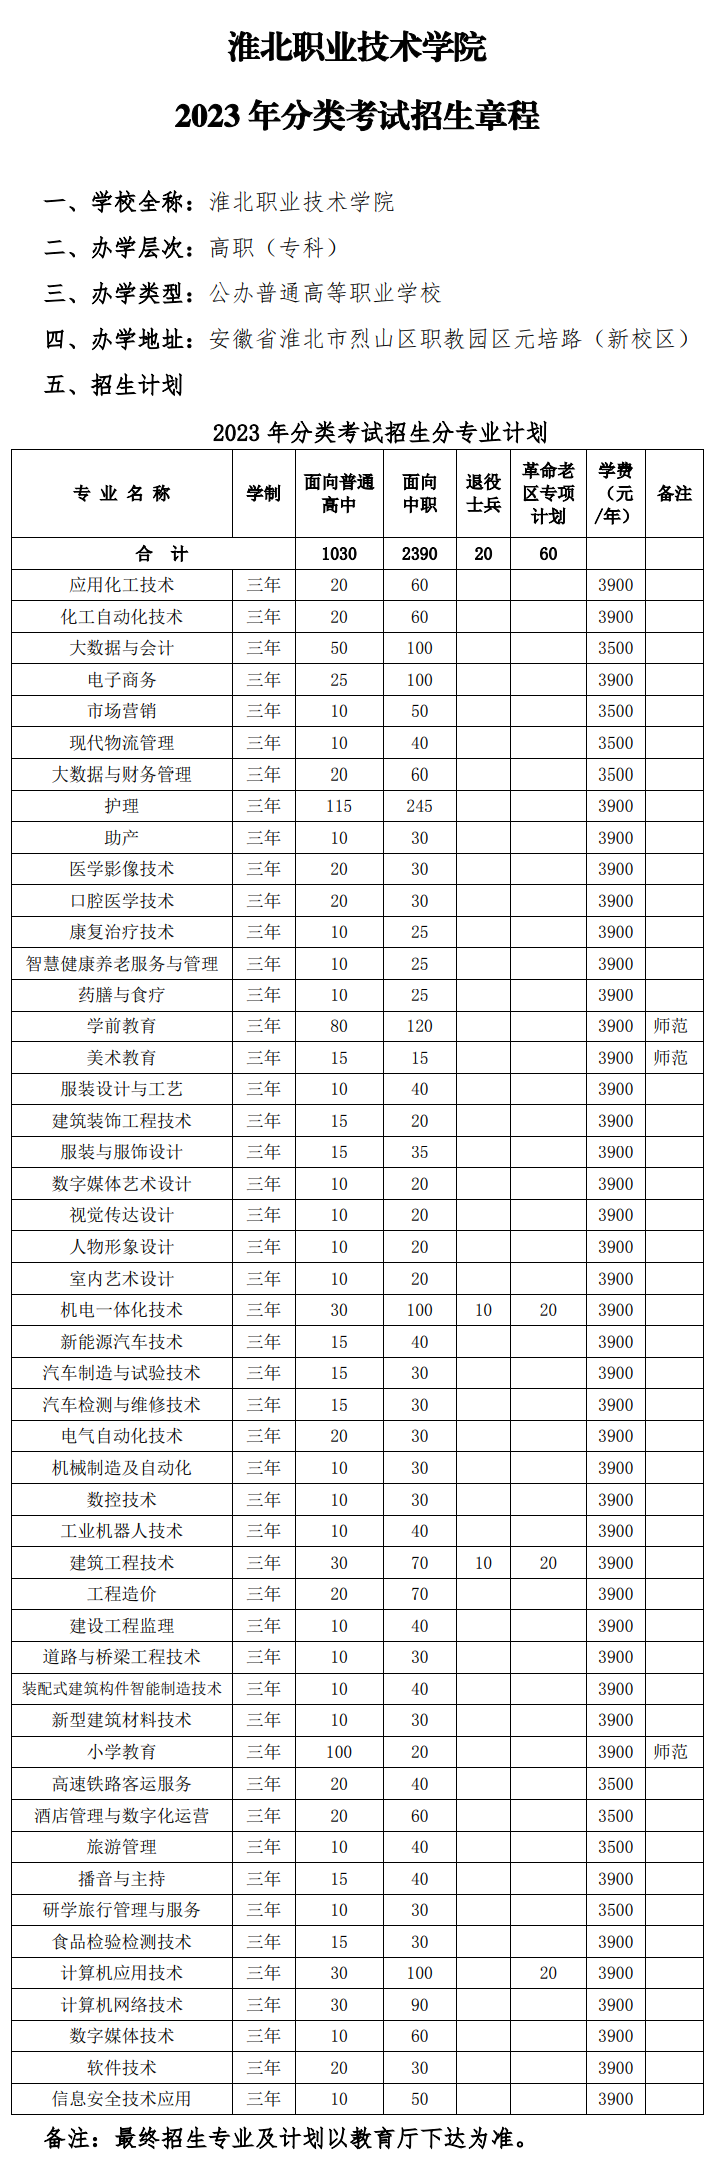 2023年淮北职业技术学院分类考试招生章程